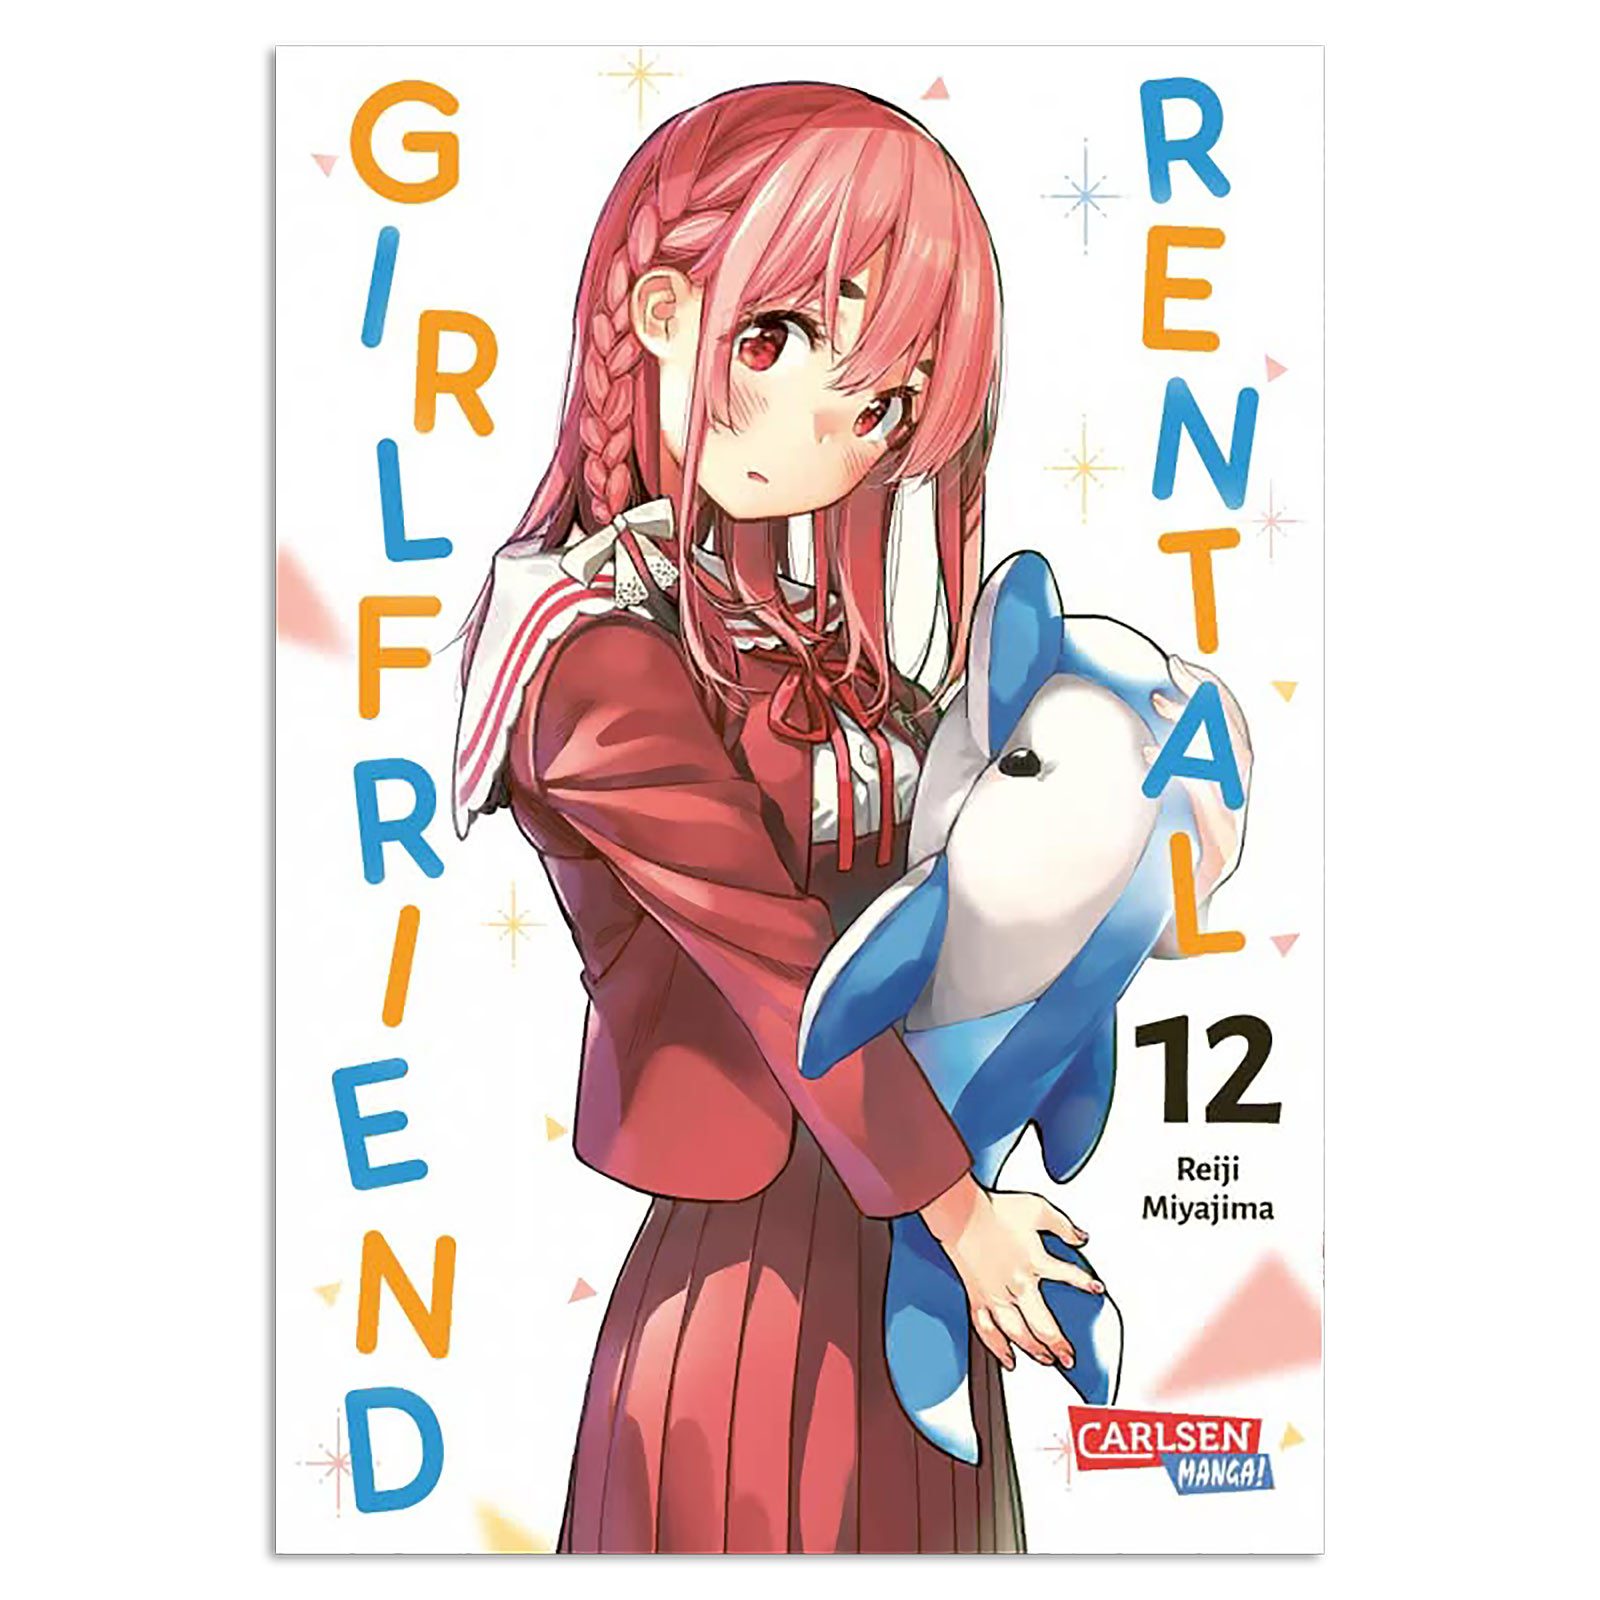 Rental Girlfriend - Volume 12 Paperback